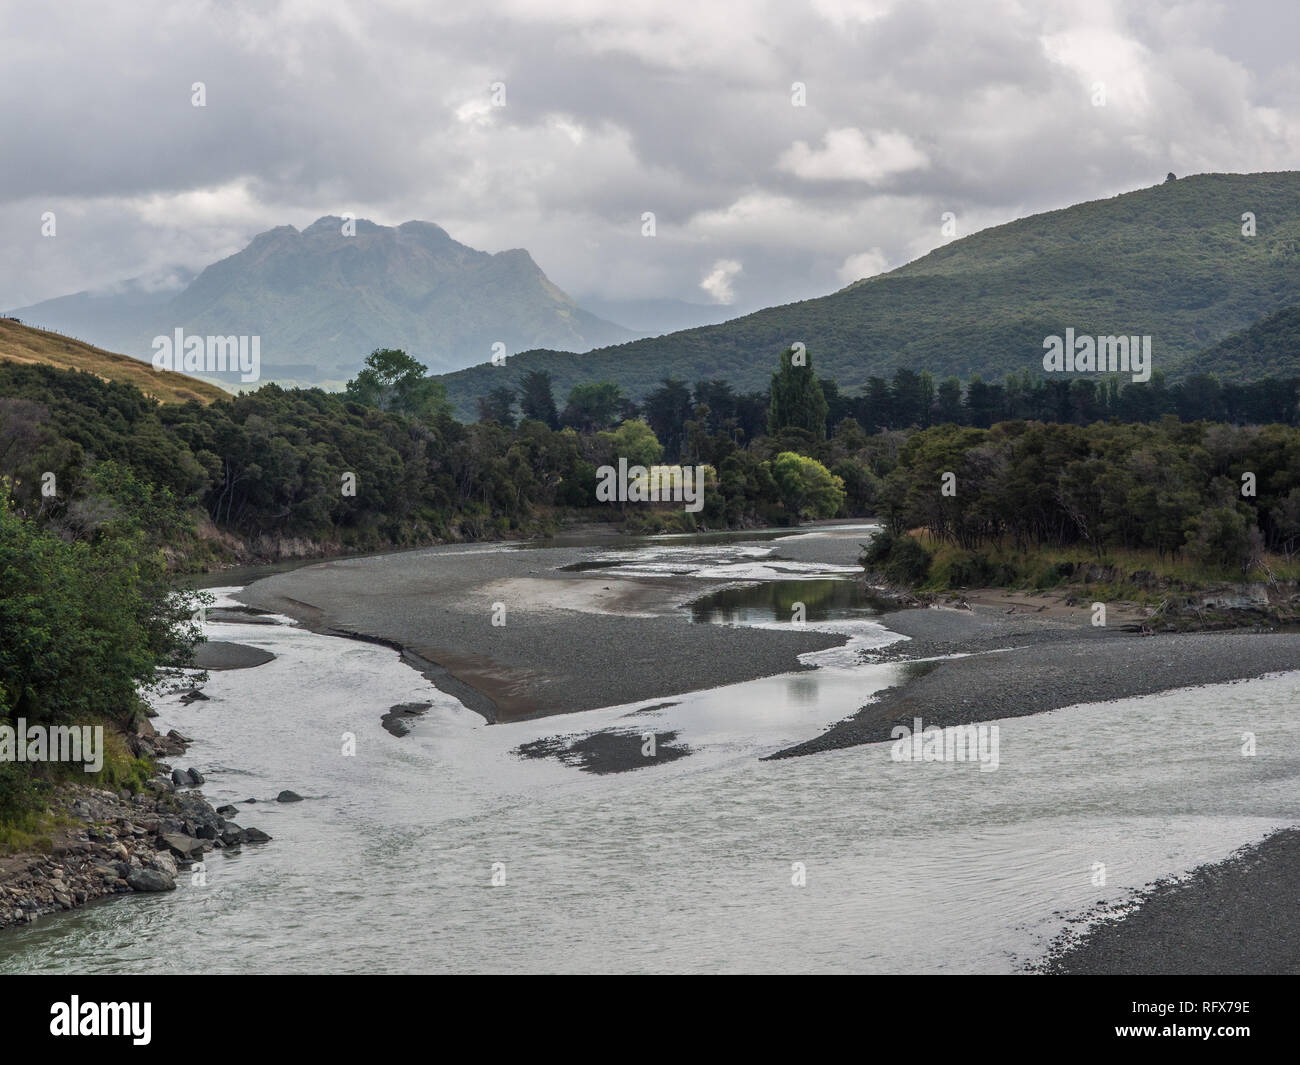 La confluenza di Tapuaeroa Mata e fiumi per formare il fiume Waiapu, Hikurangi montagna sacra di Ngati Porou nella distanza East Cape, Nuova Zelanda Foto Stock